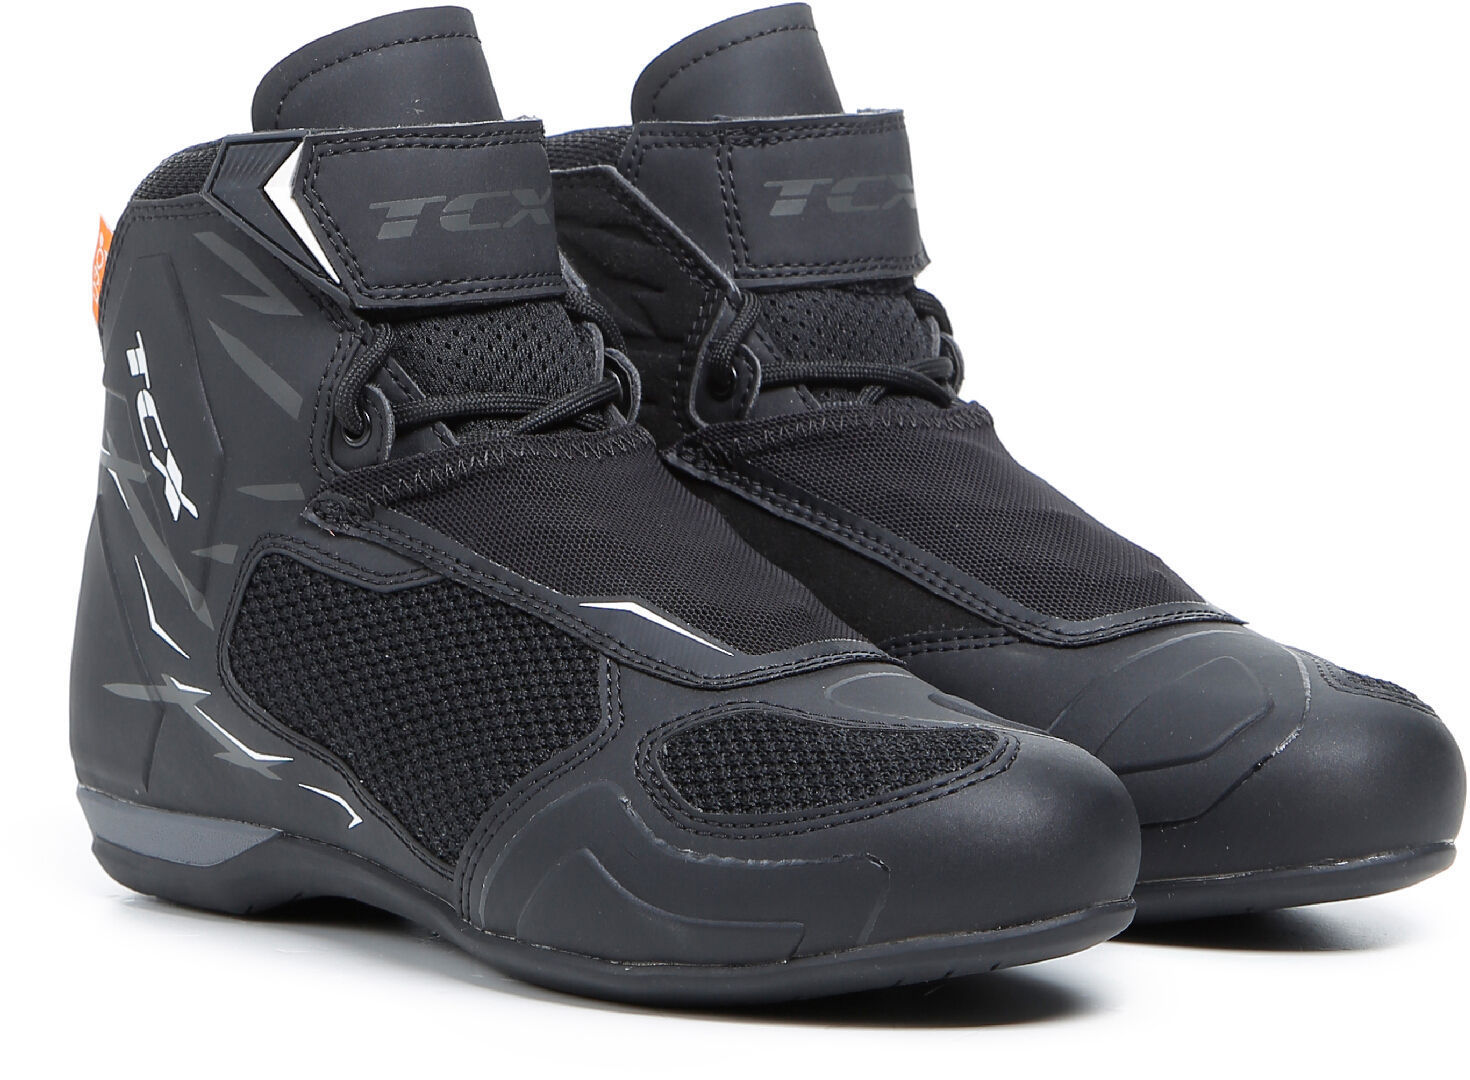 TCX RO4D Air Zapatos de moto - Negro Gris (42)